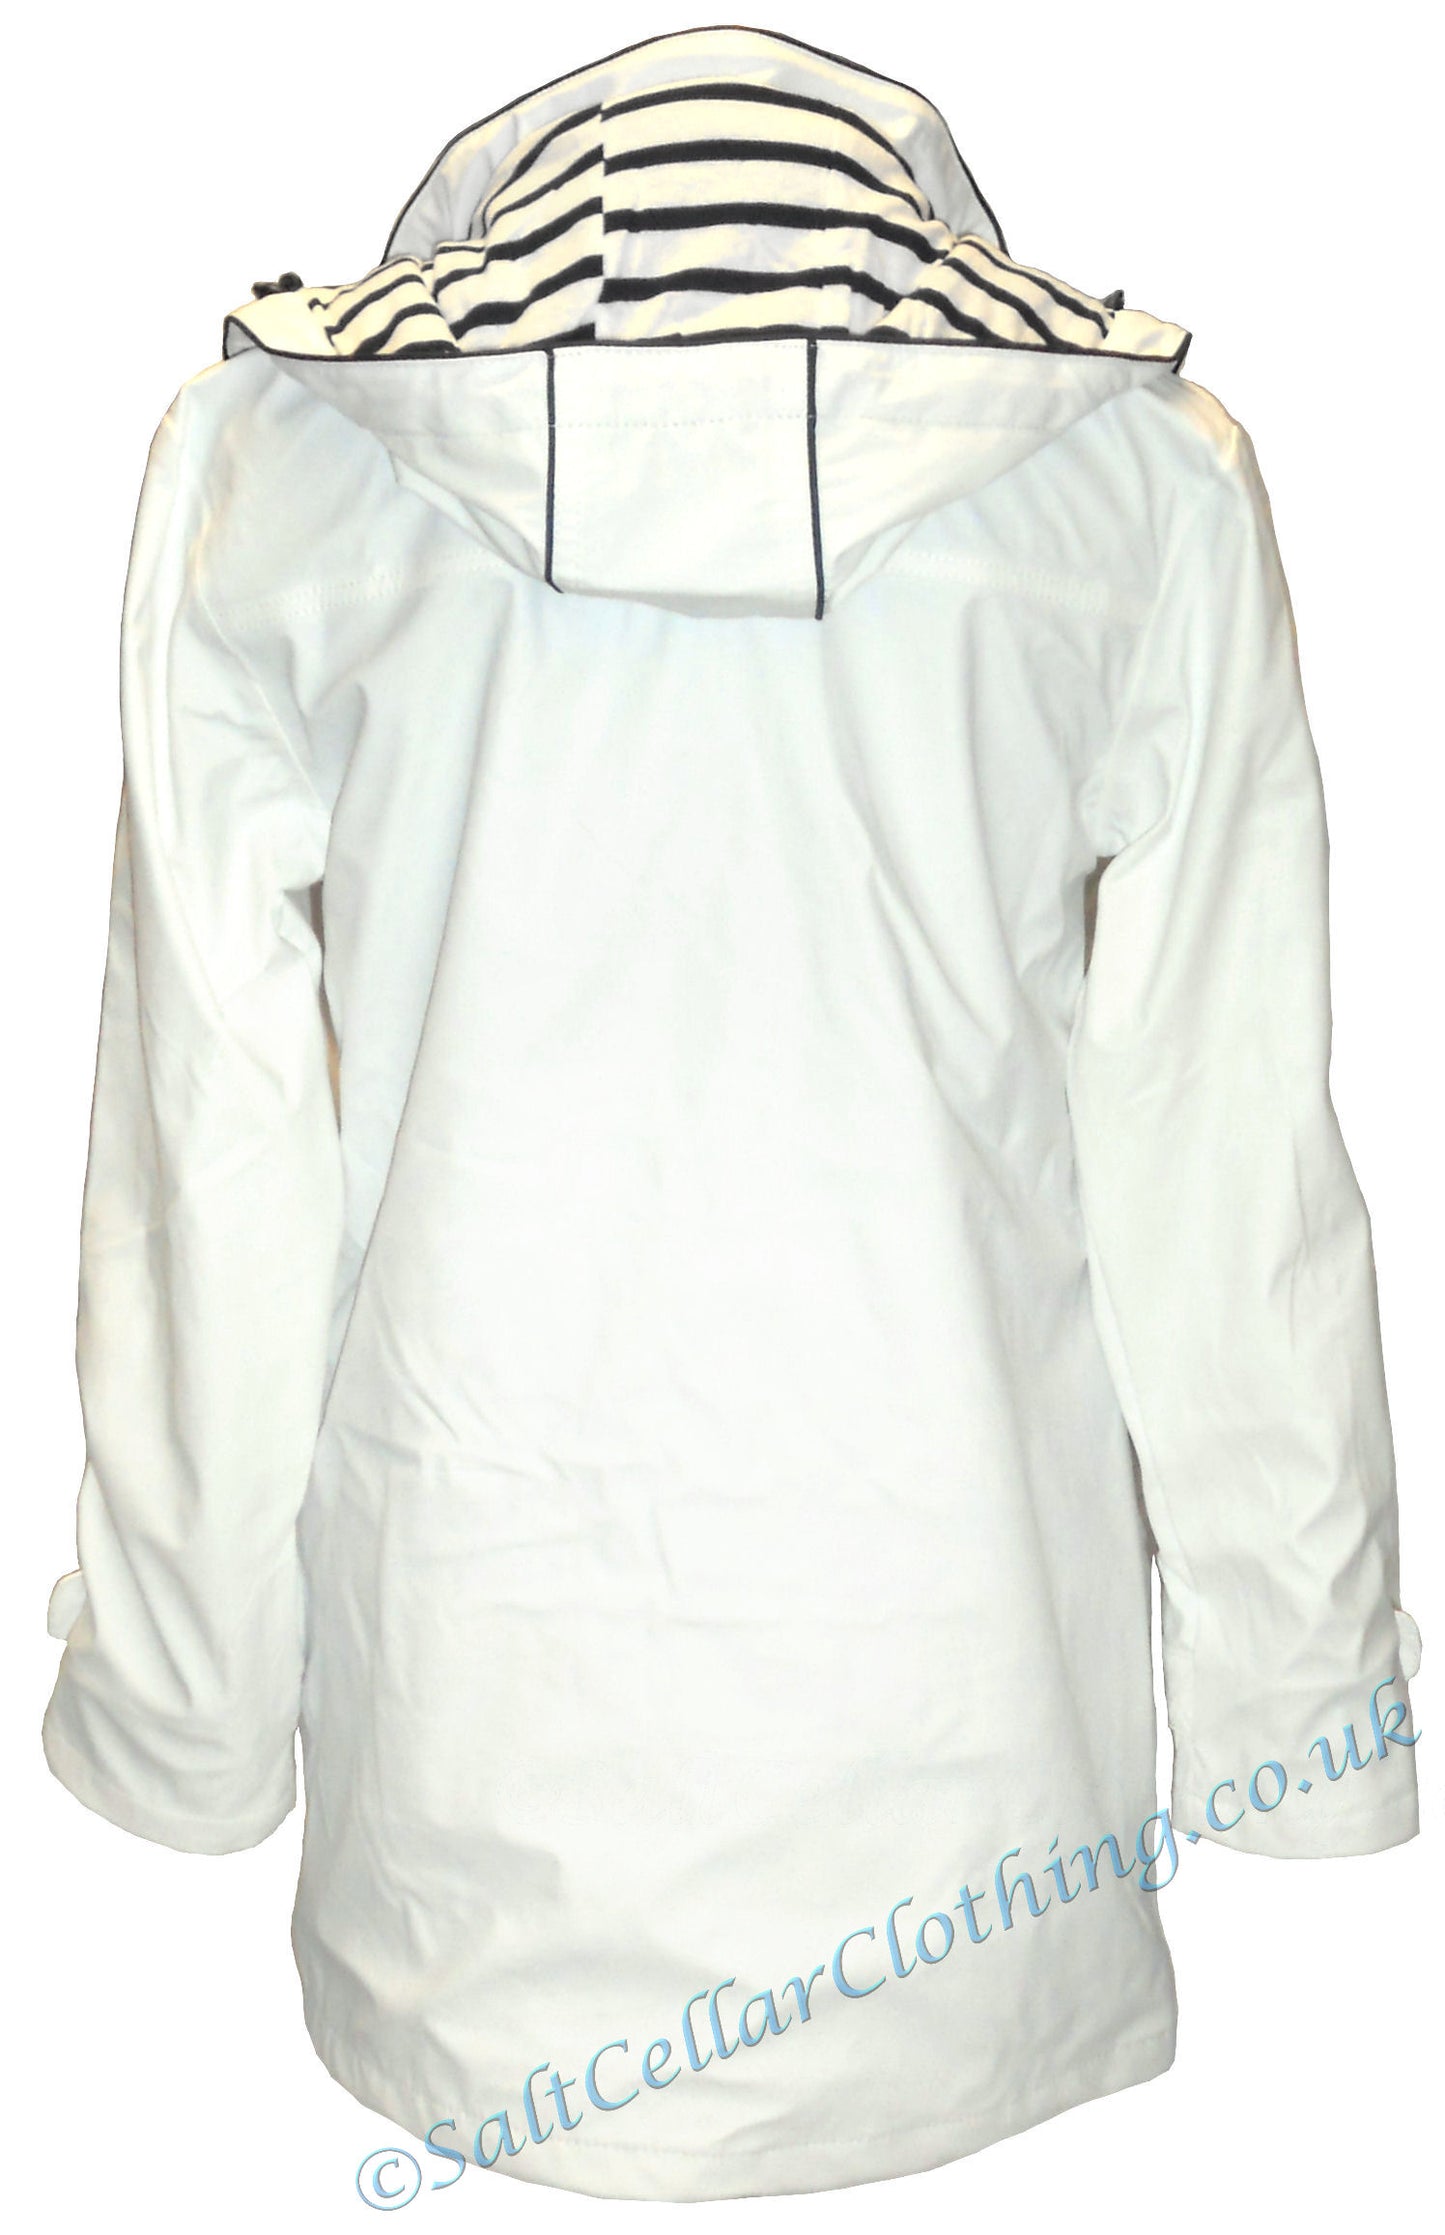 Captain Corsaire women's Regate Ete stripy lined waterproof rain jacket in white.